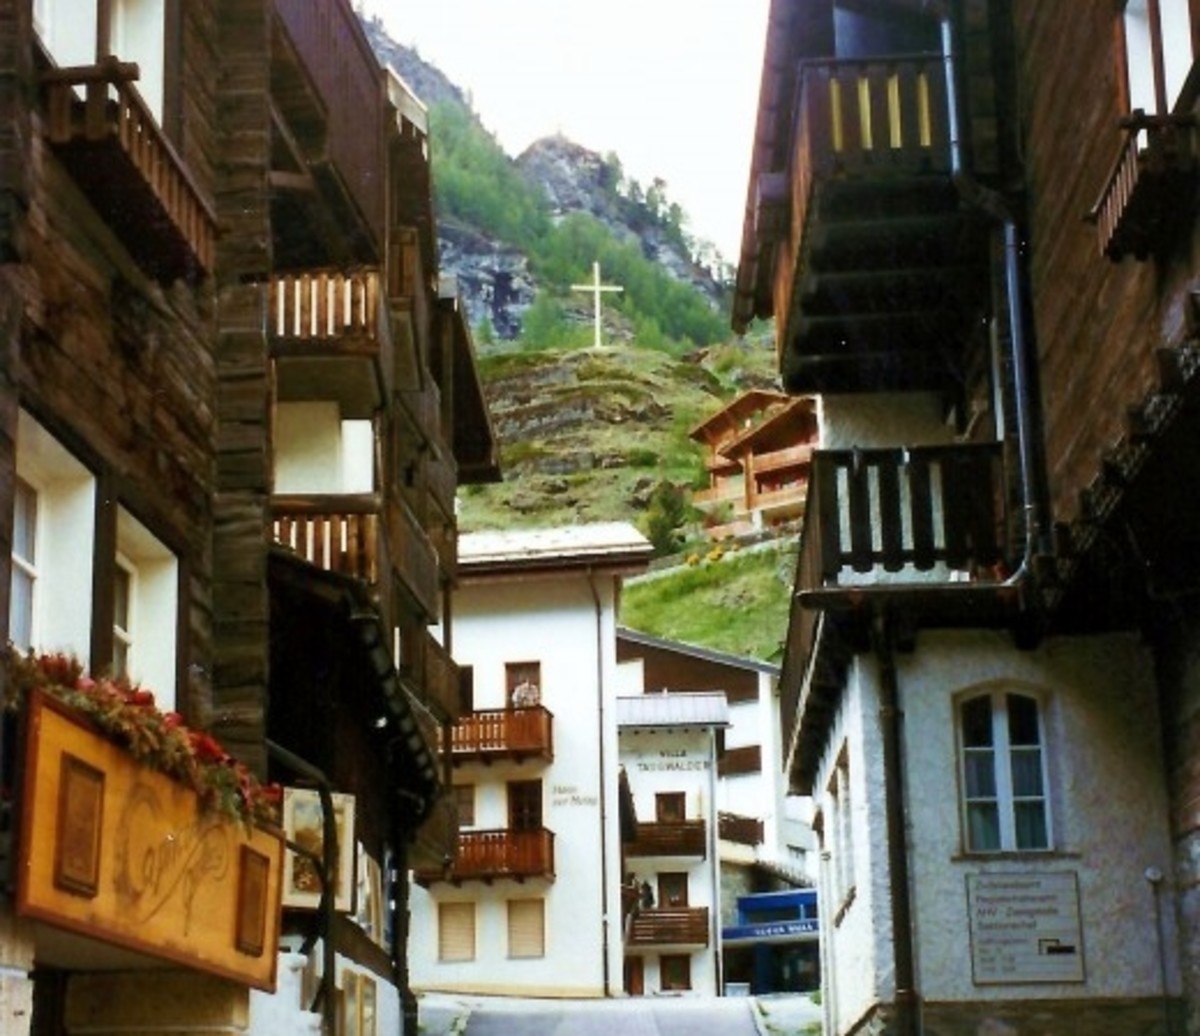 Street scenery in Zermatt